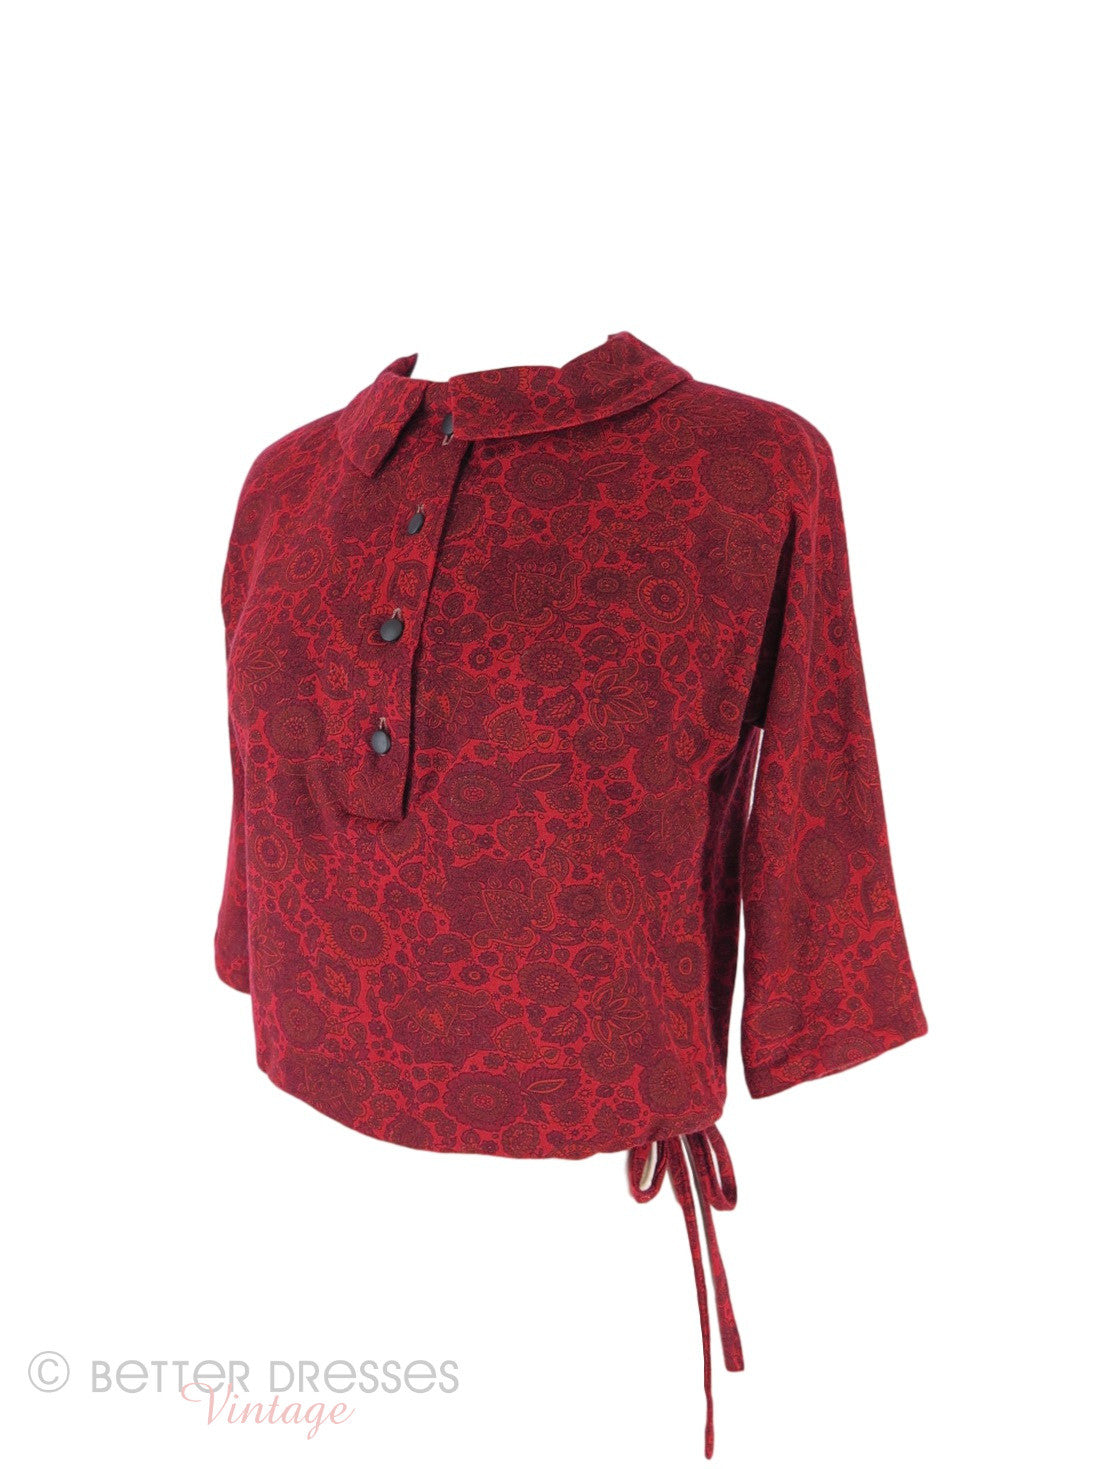 50s Red Drawstring Waist Knit Top - sm, med – Better Dresses Vintage